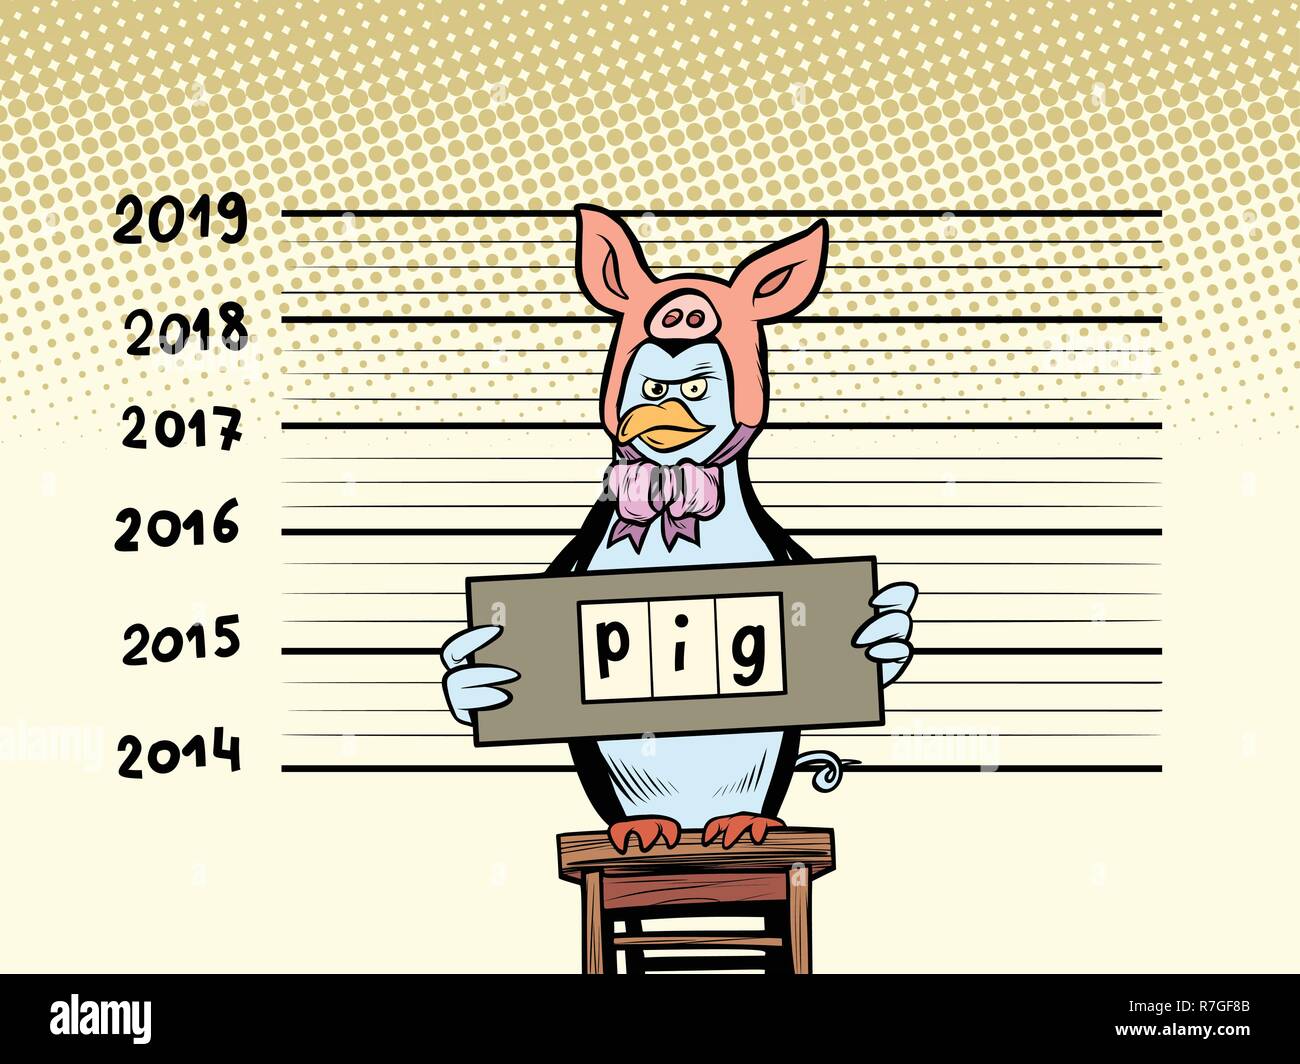 Pinguin verhaftet gab vor, ein Schwein zu sein. 2019. Frohes neues Jahr. Comic cartoon Pop Art retro Vektor illustration Zeichnung Stock Vektor